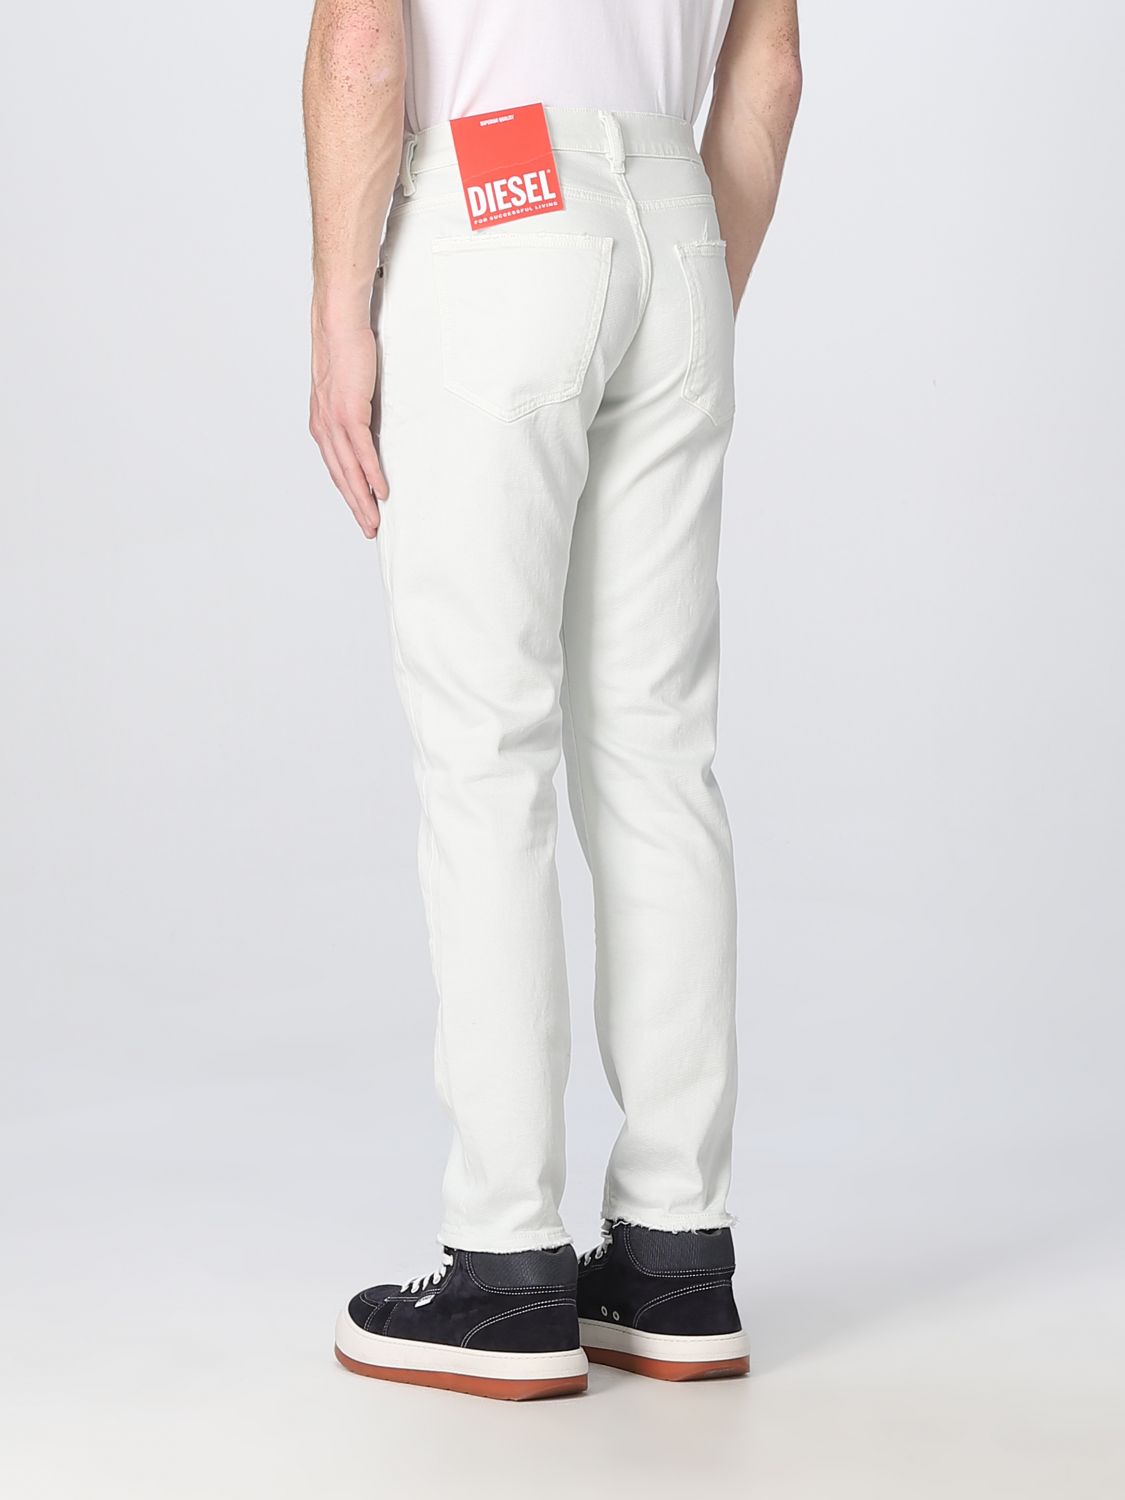 DIESEL: jeans man - Denim | Diesel A0356209F26 online on GIGLIO.COM